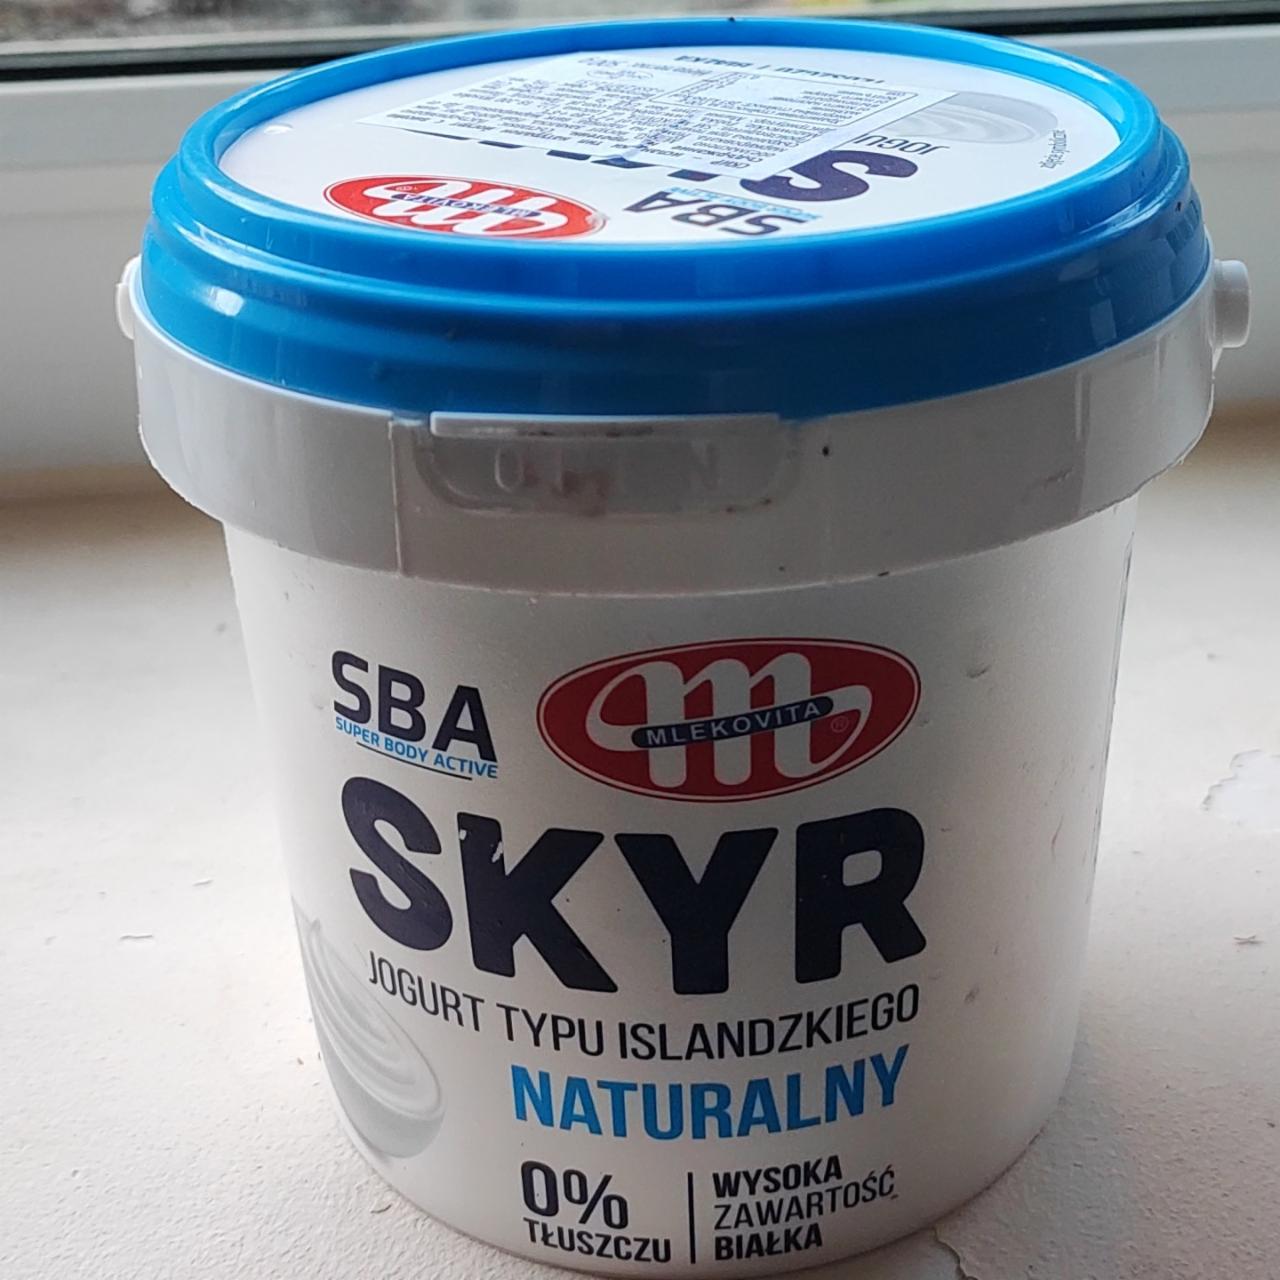 Фото - йогурт skyr с повышенным содержанием белка 0% Mlekovita